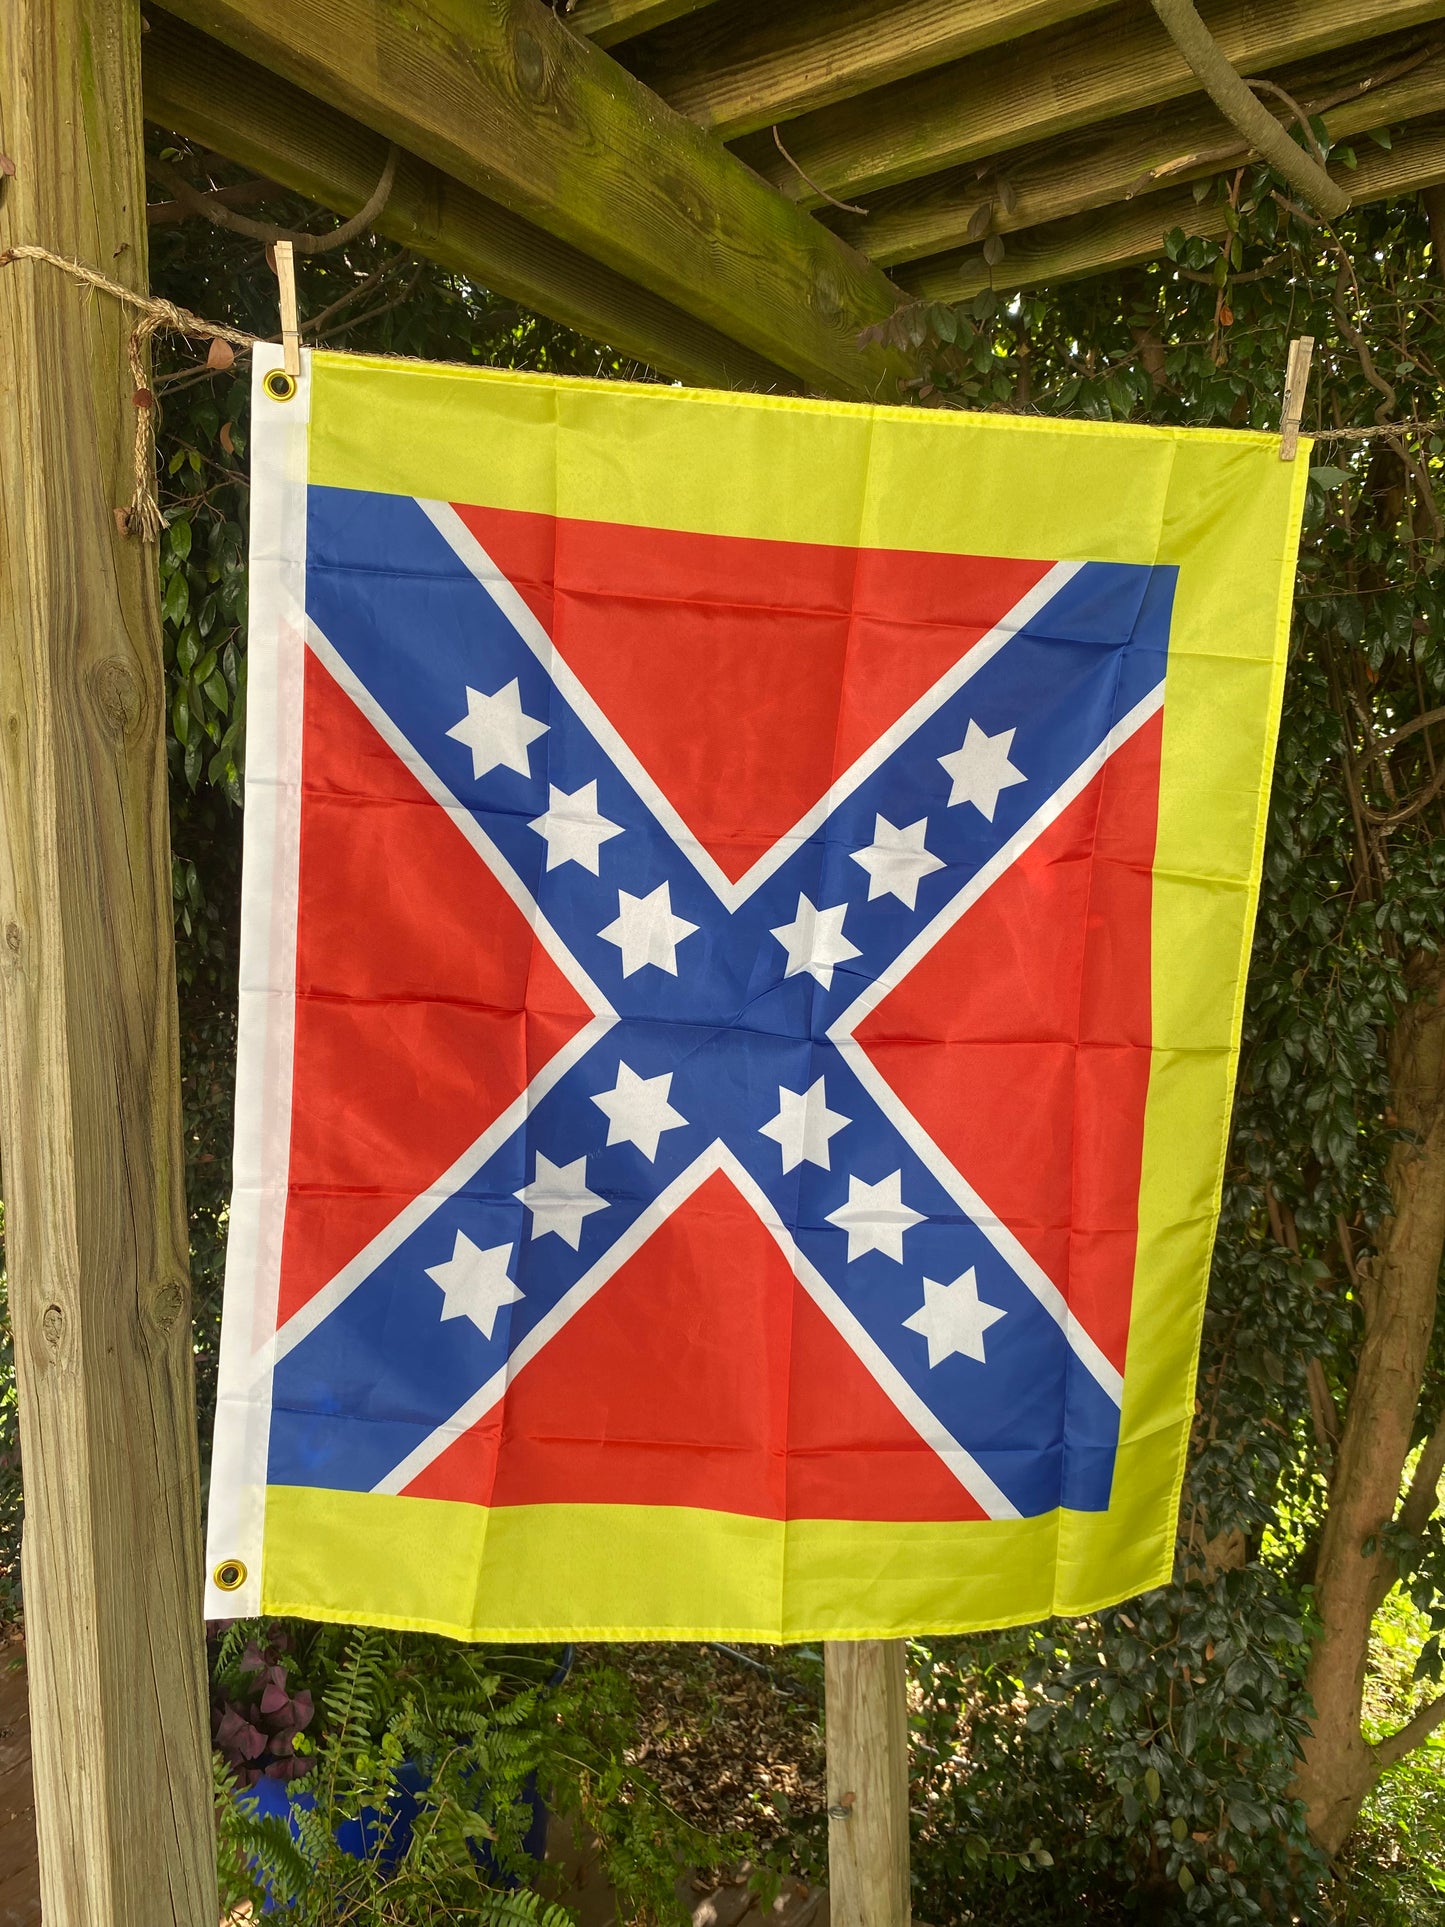 9th Mississippi House Flag